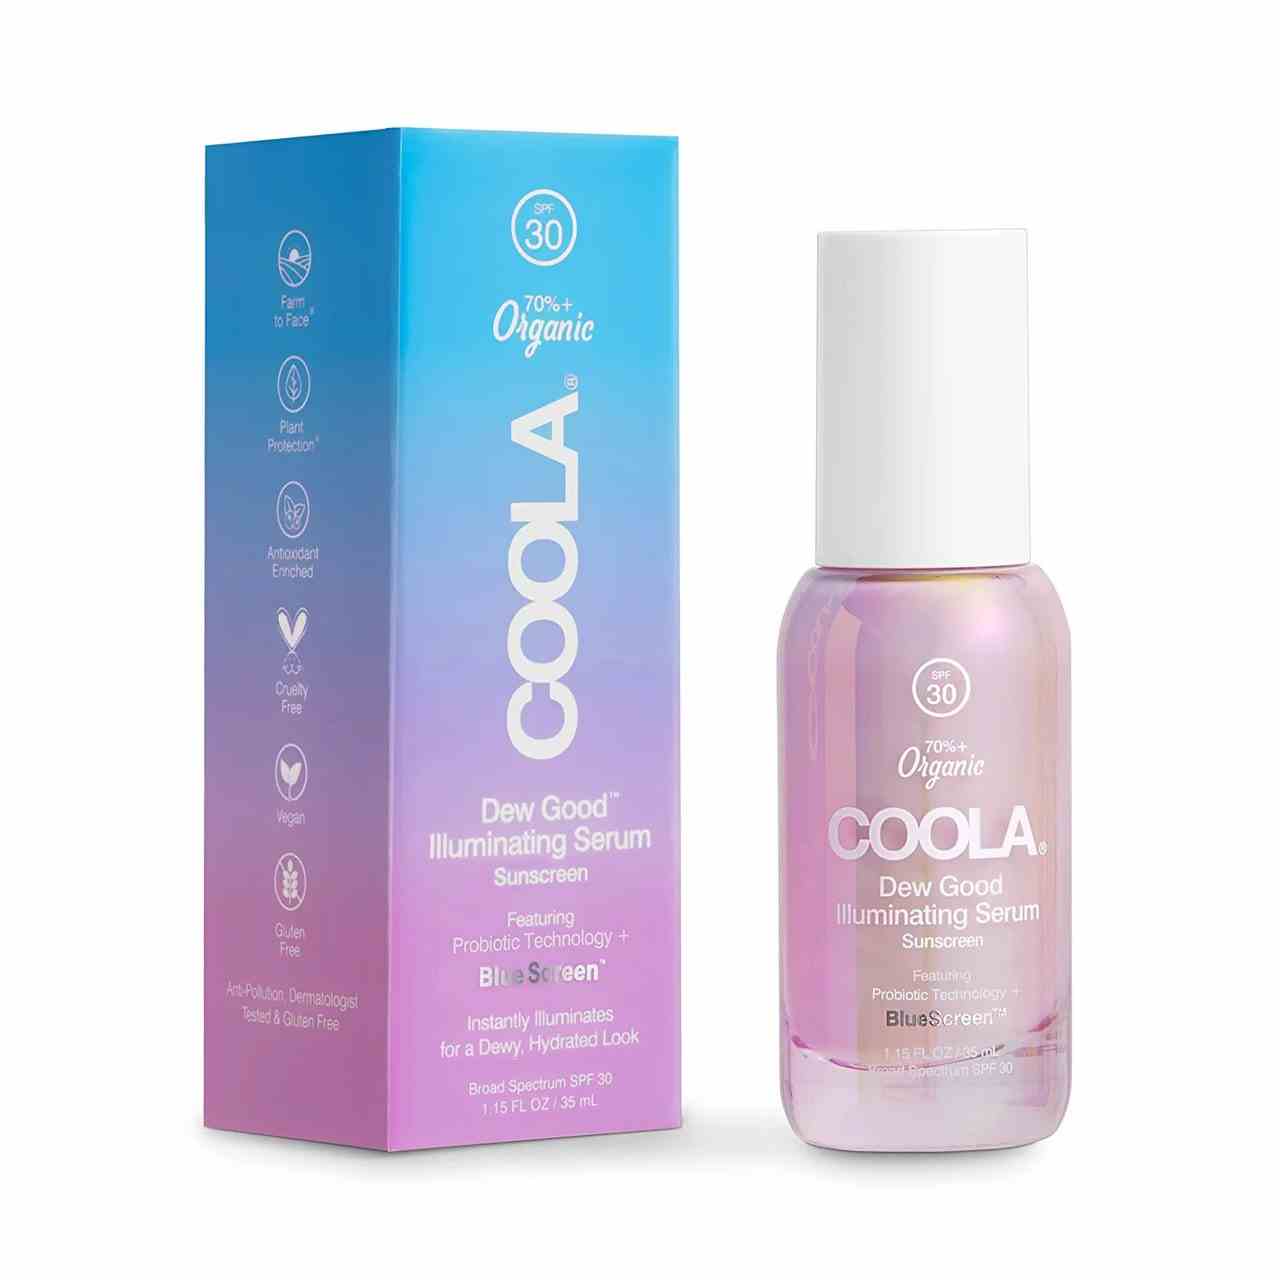 Coola Dew Good Illuminating Serum Sunscreen SPF 30 rosafarbene Flasche mit weißem Verschluss und Flasche mit Farbverlauf von blau nach lila auf weißem Hintergrund